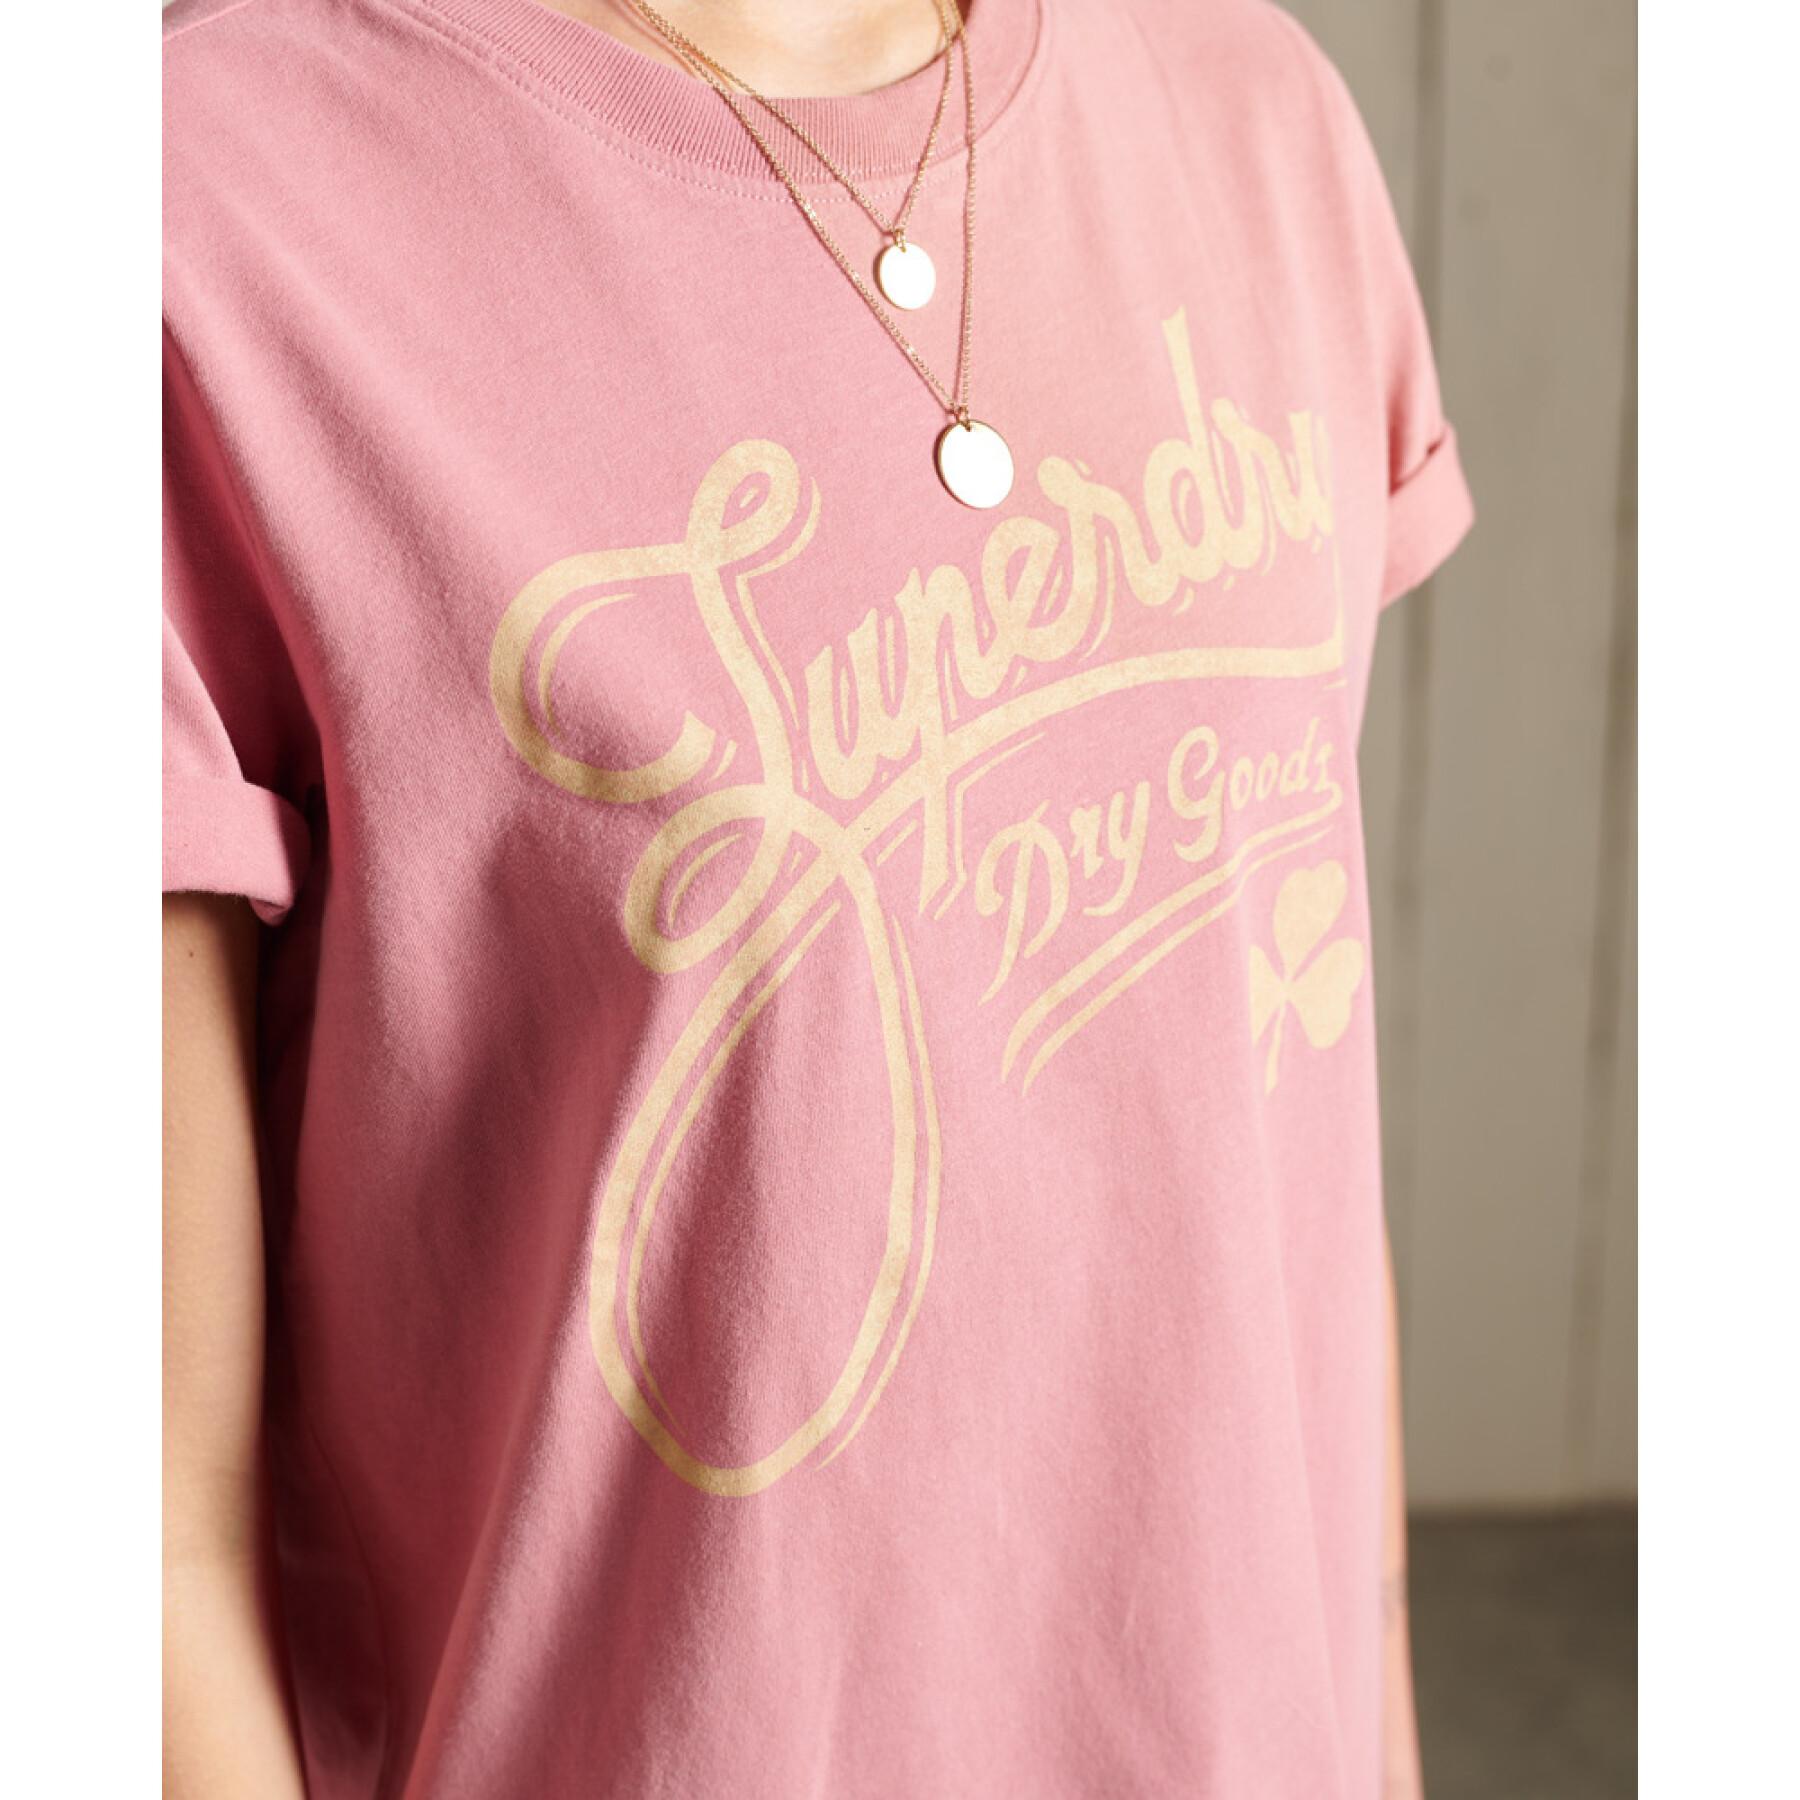 Frauen-T-Shirt Superdry Workwear